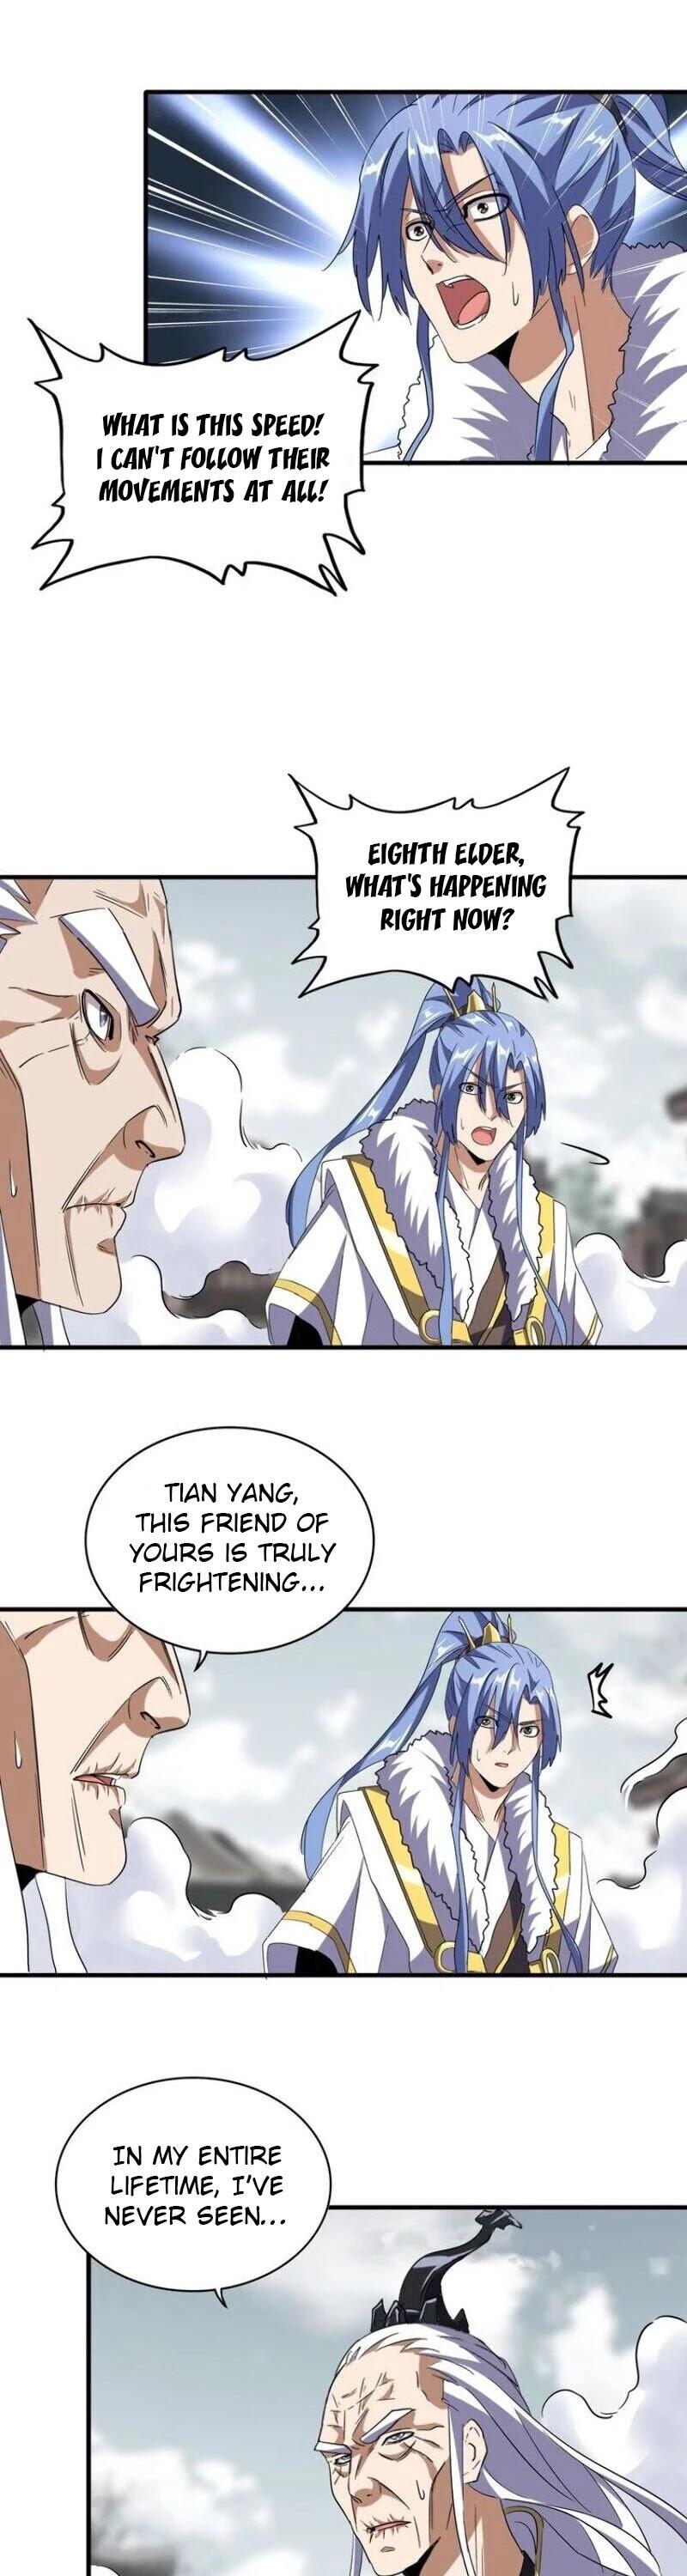 Magic Emperor Chapter 97 page 24 - Mangakakalot